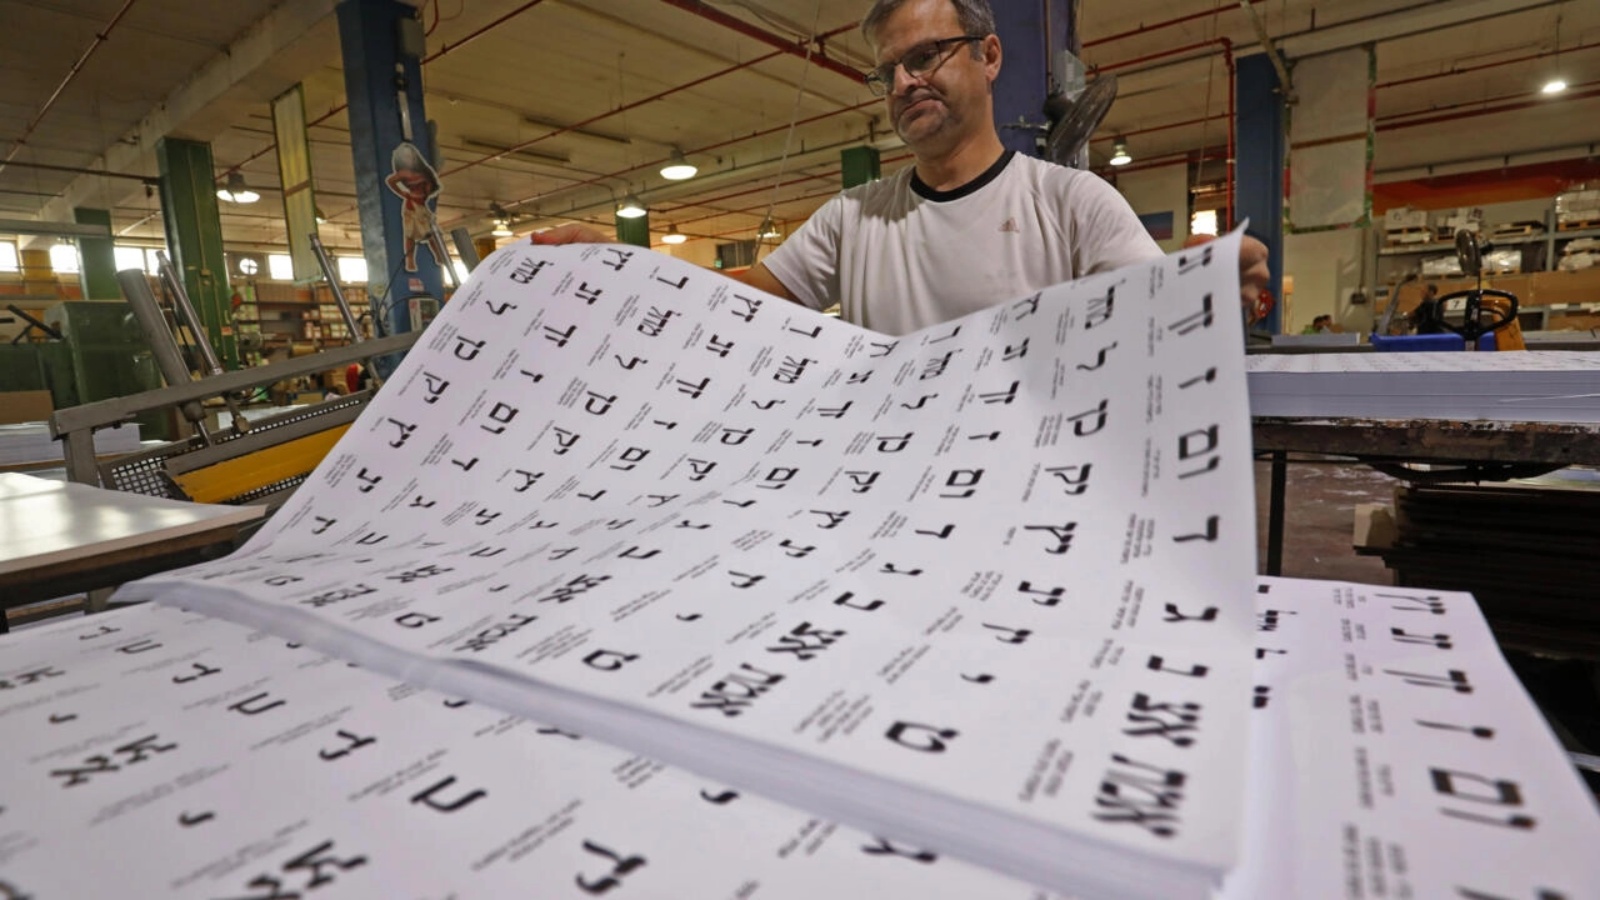 عمال يعدون أوراق الاقتراع في مصنع طباعة في مستوطنة كارني شومرون الإسرائيلية في شمال الضفة الغربية قبل الانتخابات الإسرائيلية في 1 نوفمبر